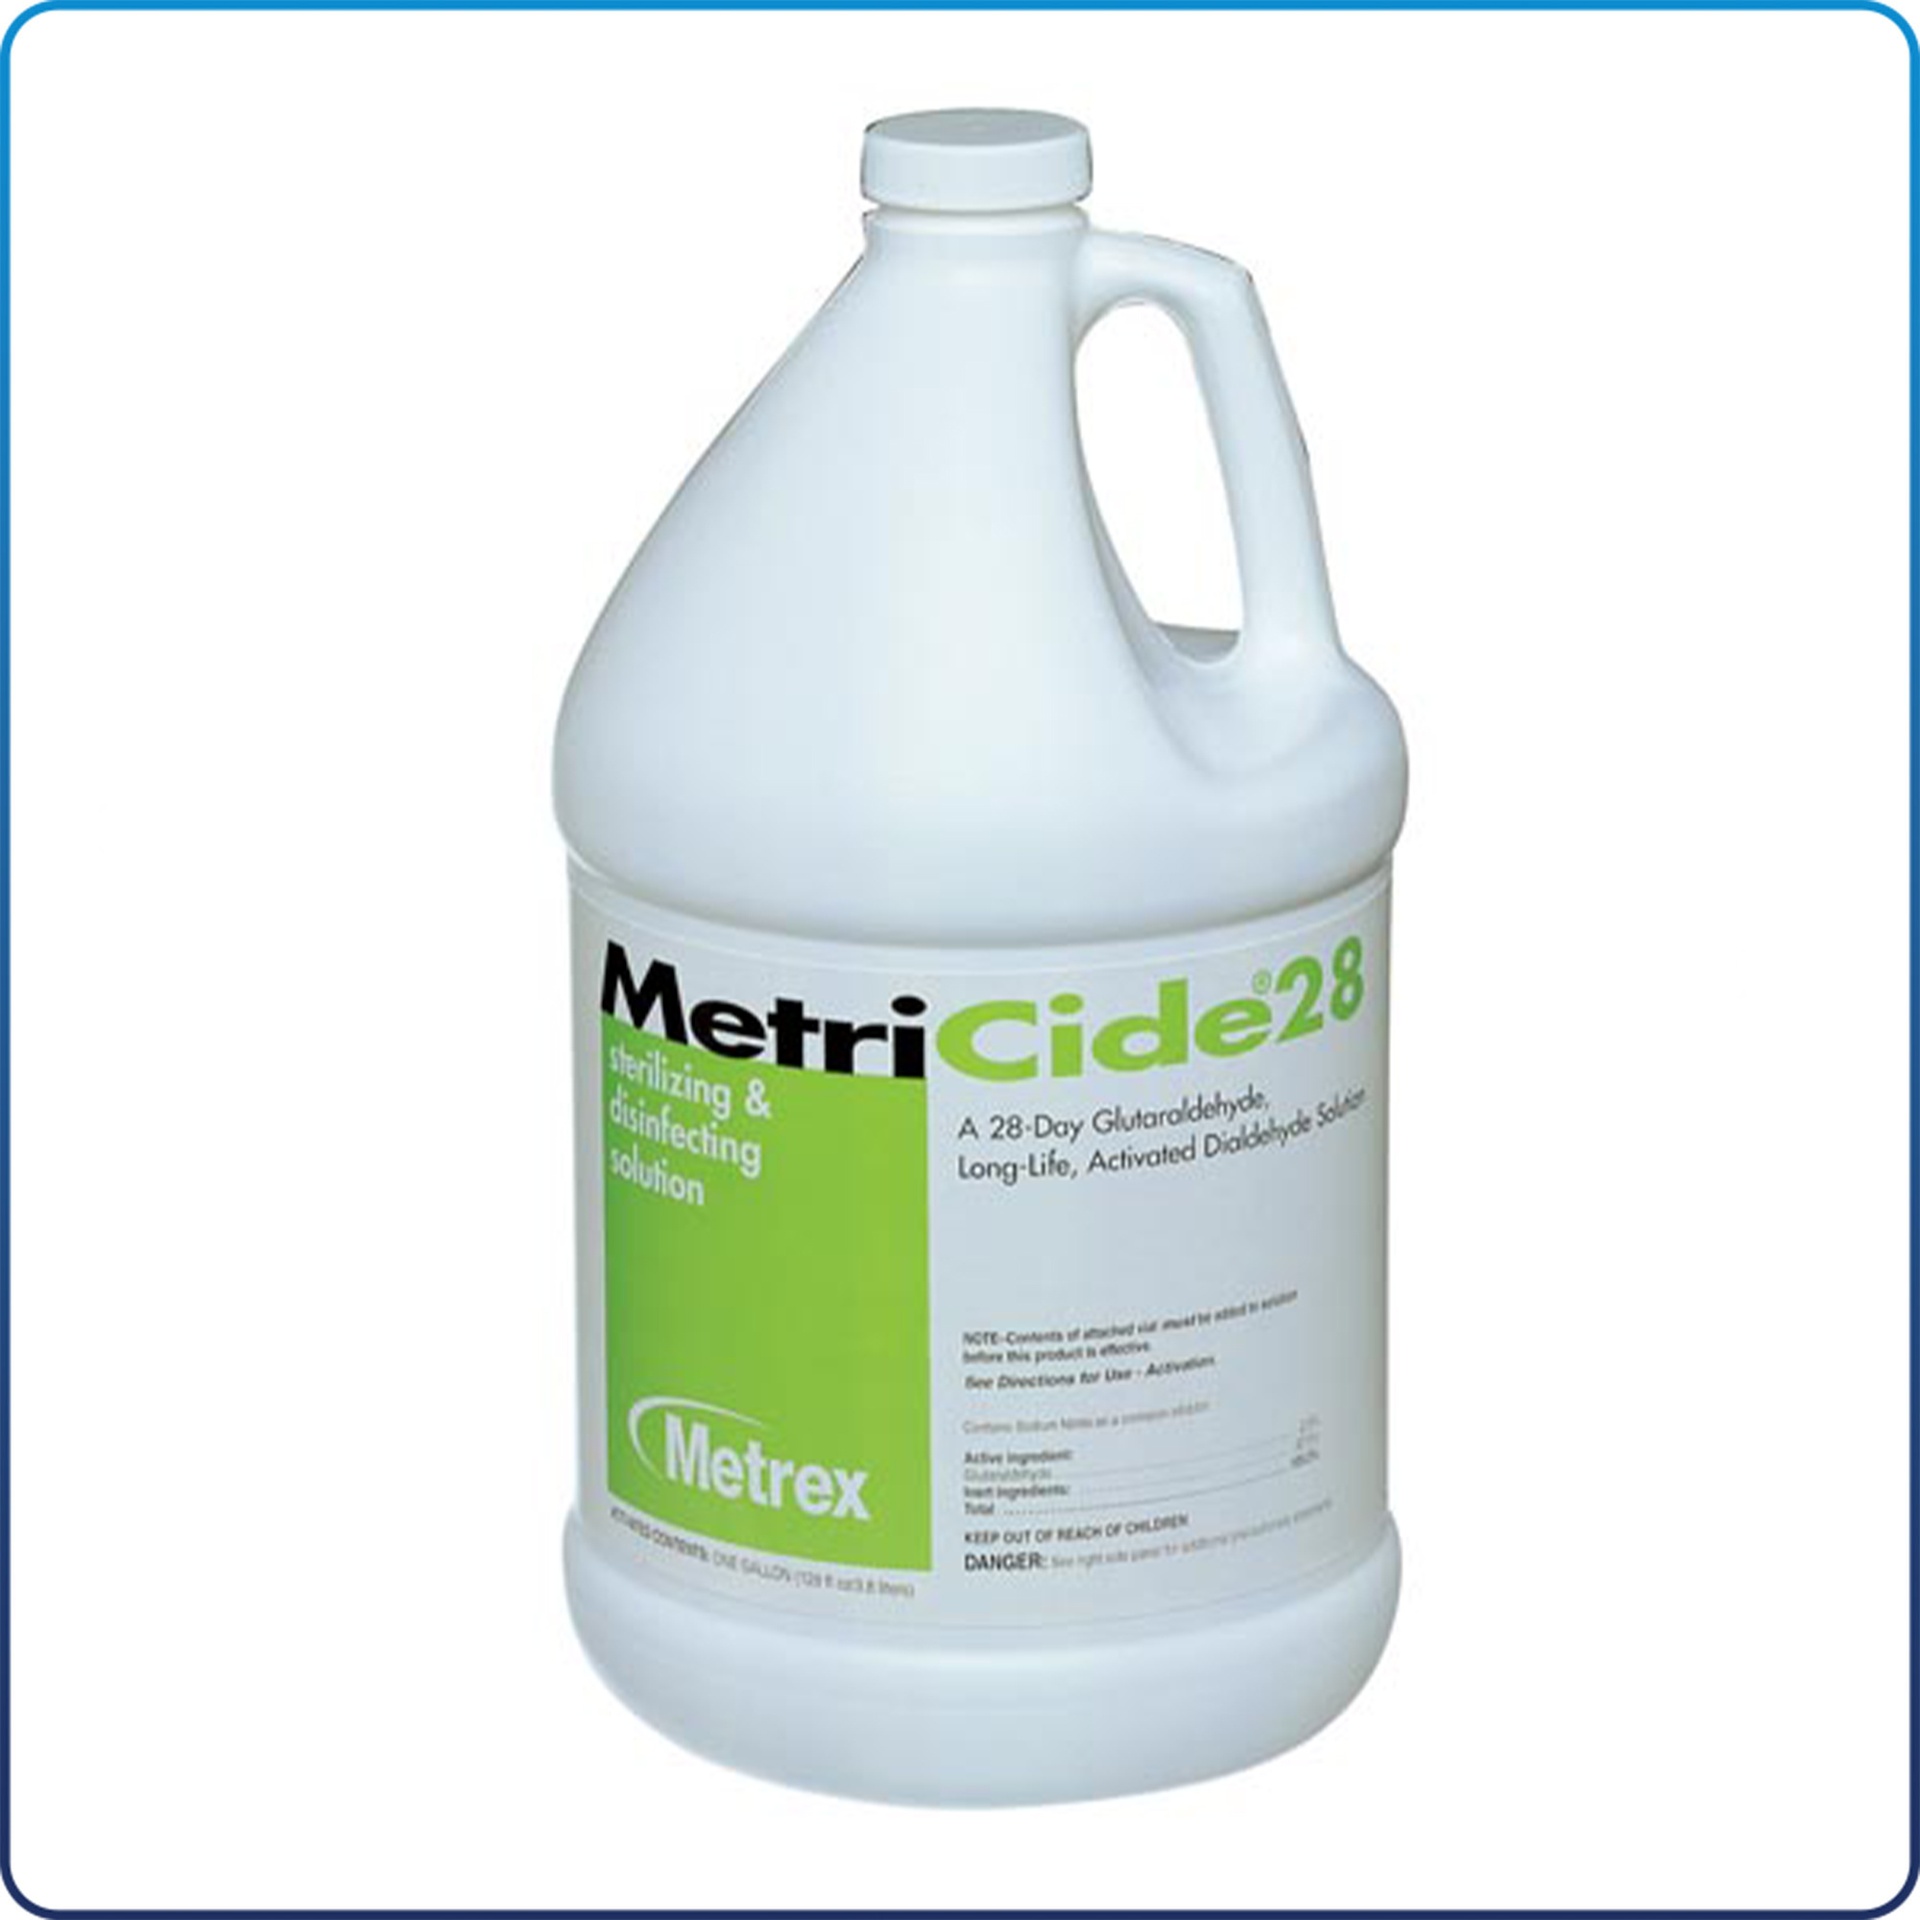 MetriCide 28 Sterilizing Solution